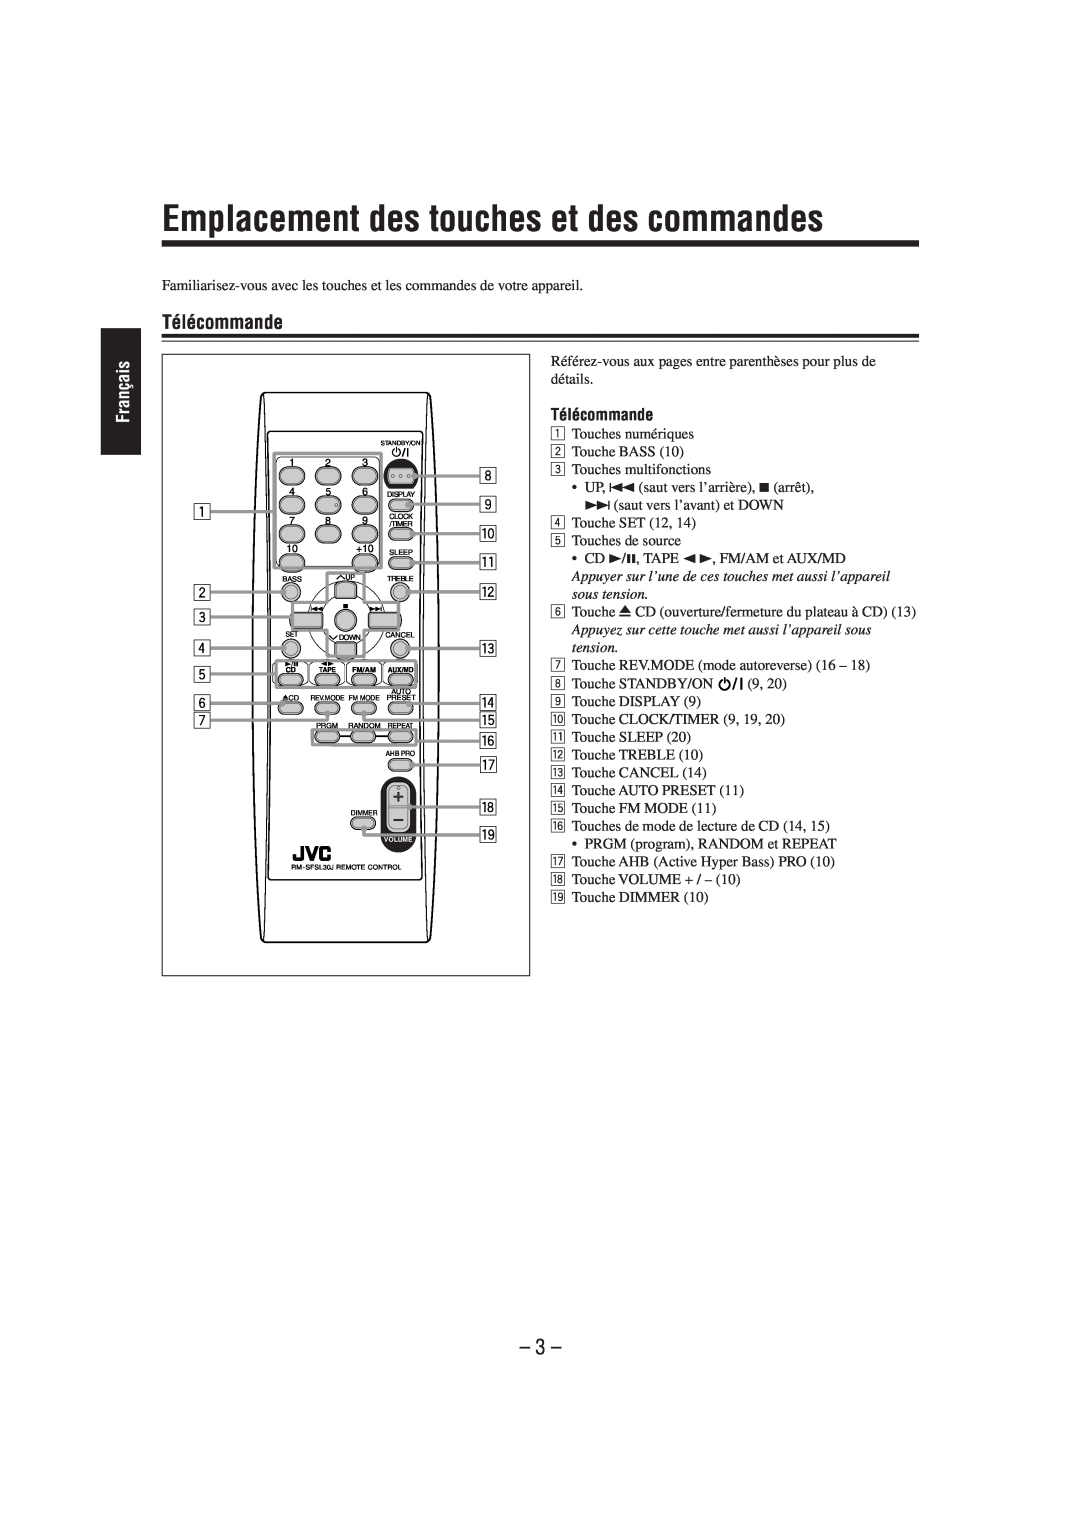 JVC FS-L30 manual Emplacement des touches et des commandes, Télécommande, Français, 8 9 p q w e r t y u i o 